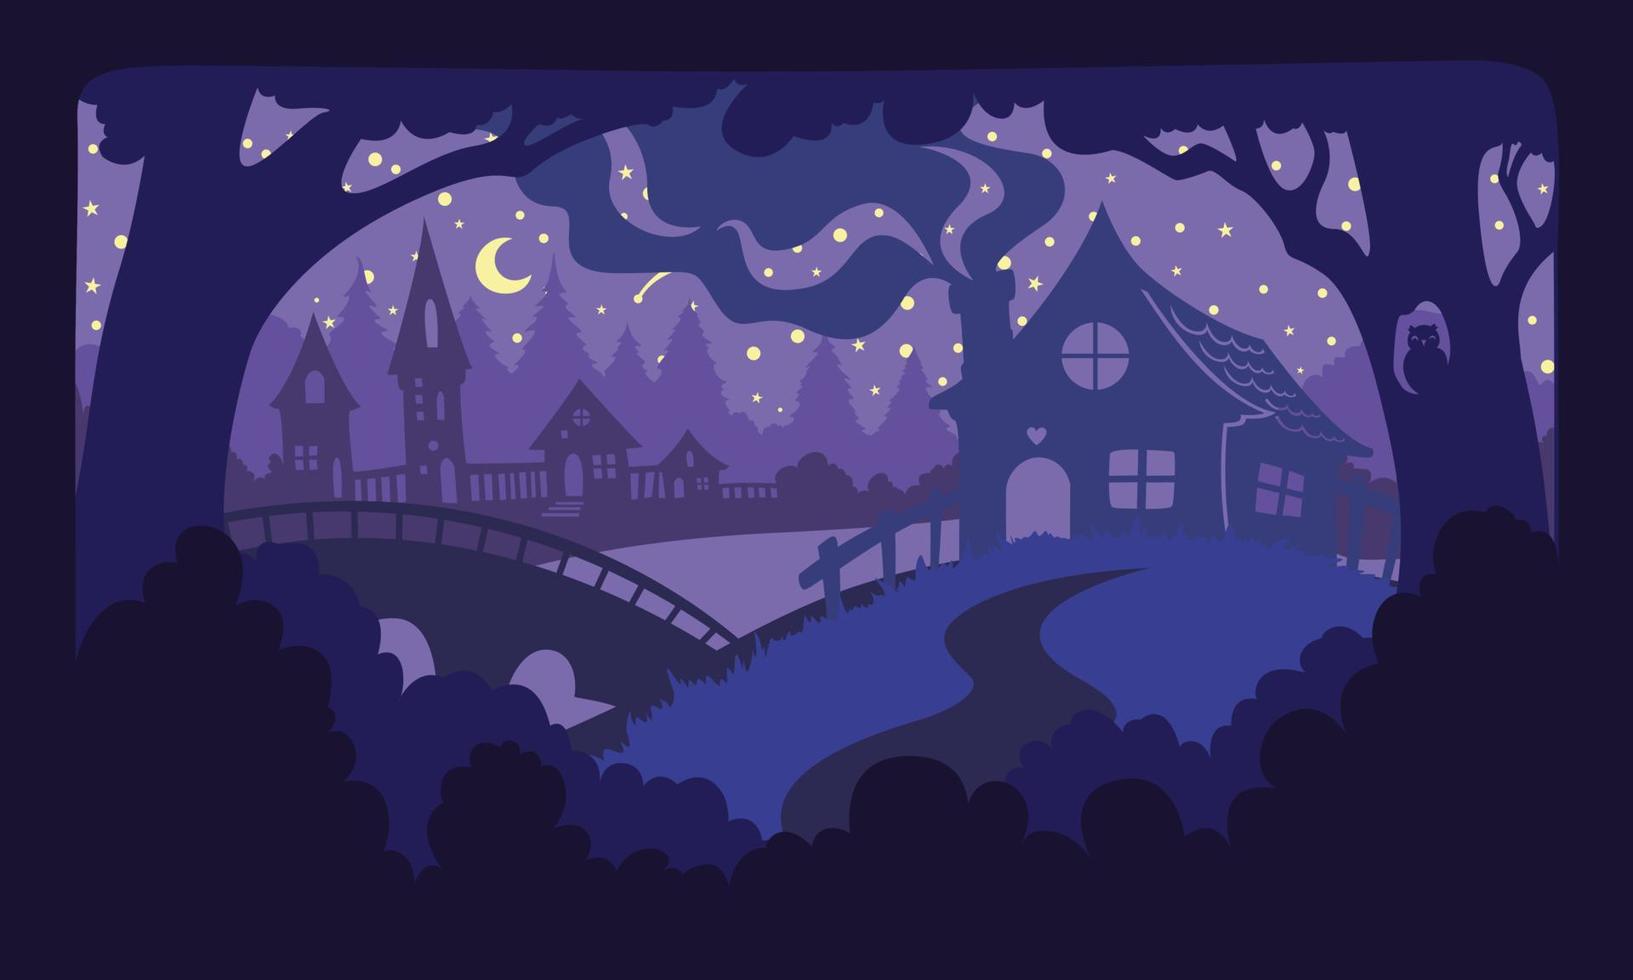 nachtlandschap met huizen met rook uit een schoorsteen, bossen, bomen, een brug, een uil in een holte. snijpapier techniek voor met de hand gemaakt. paarse en donkerblauwe kleuren. vector